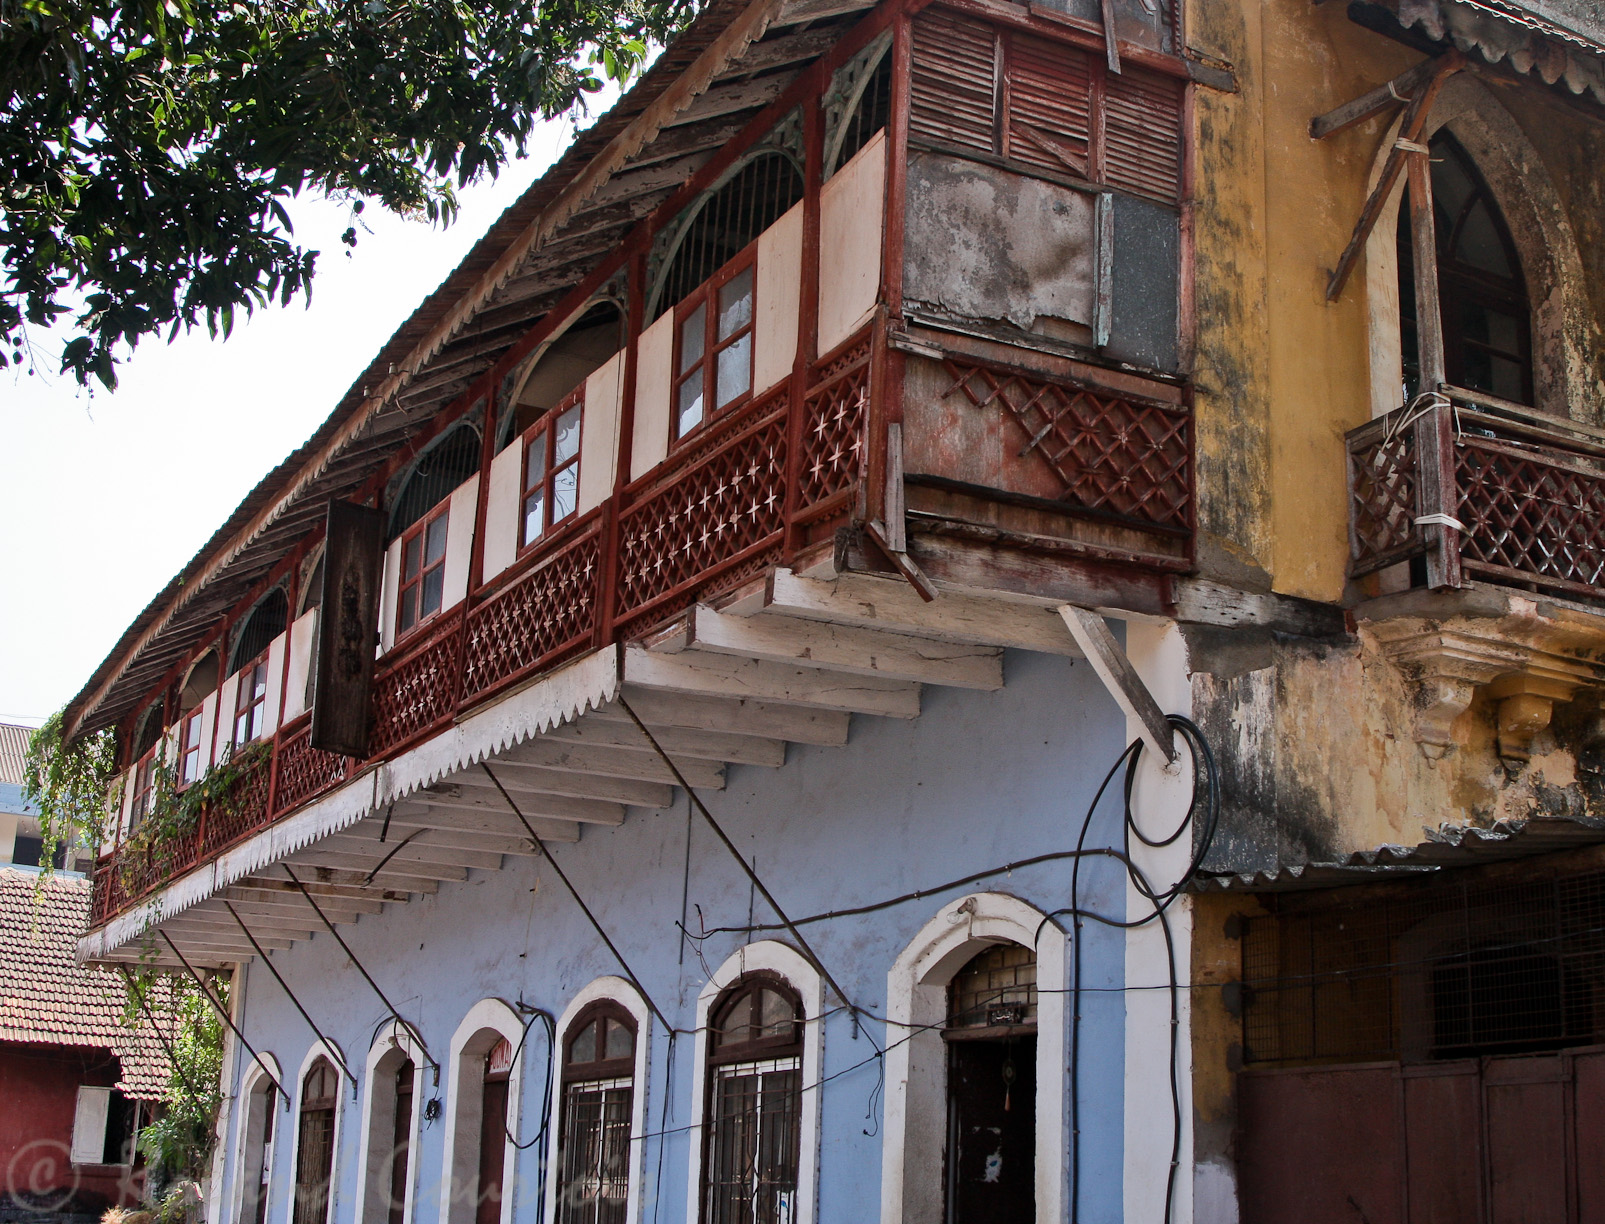 Les maisons à balcon rappellent la présence portugaise.